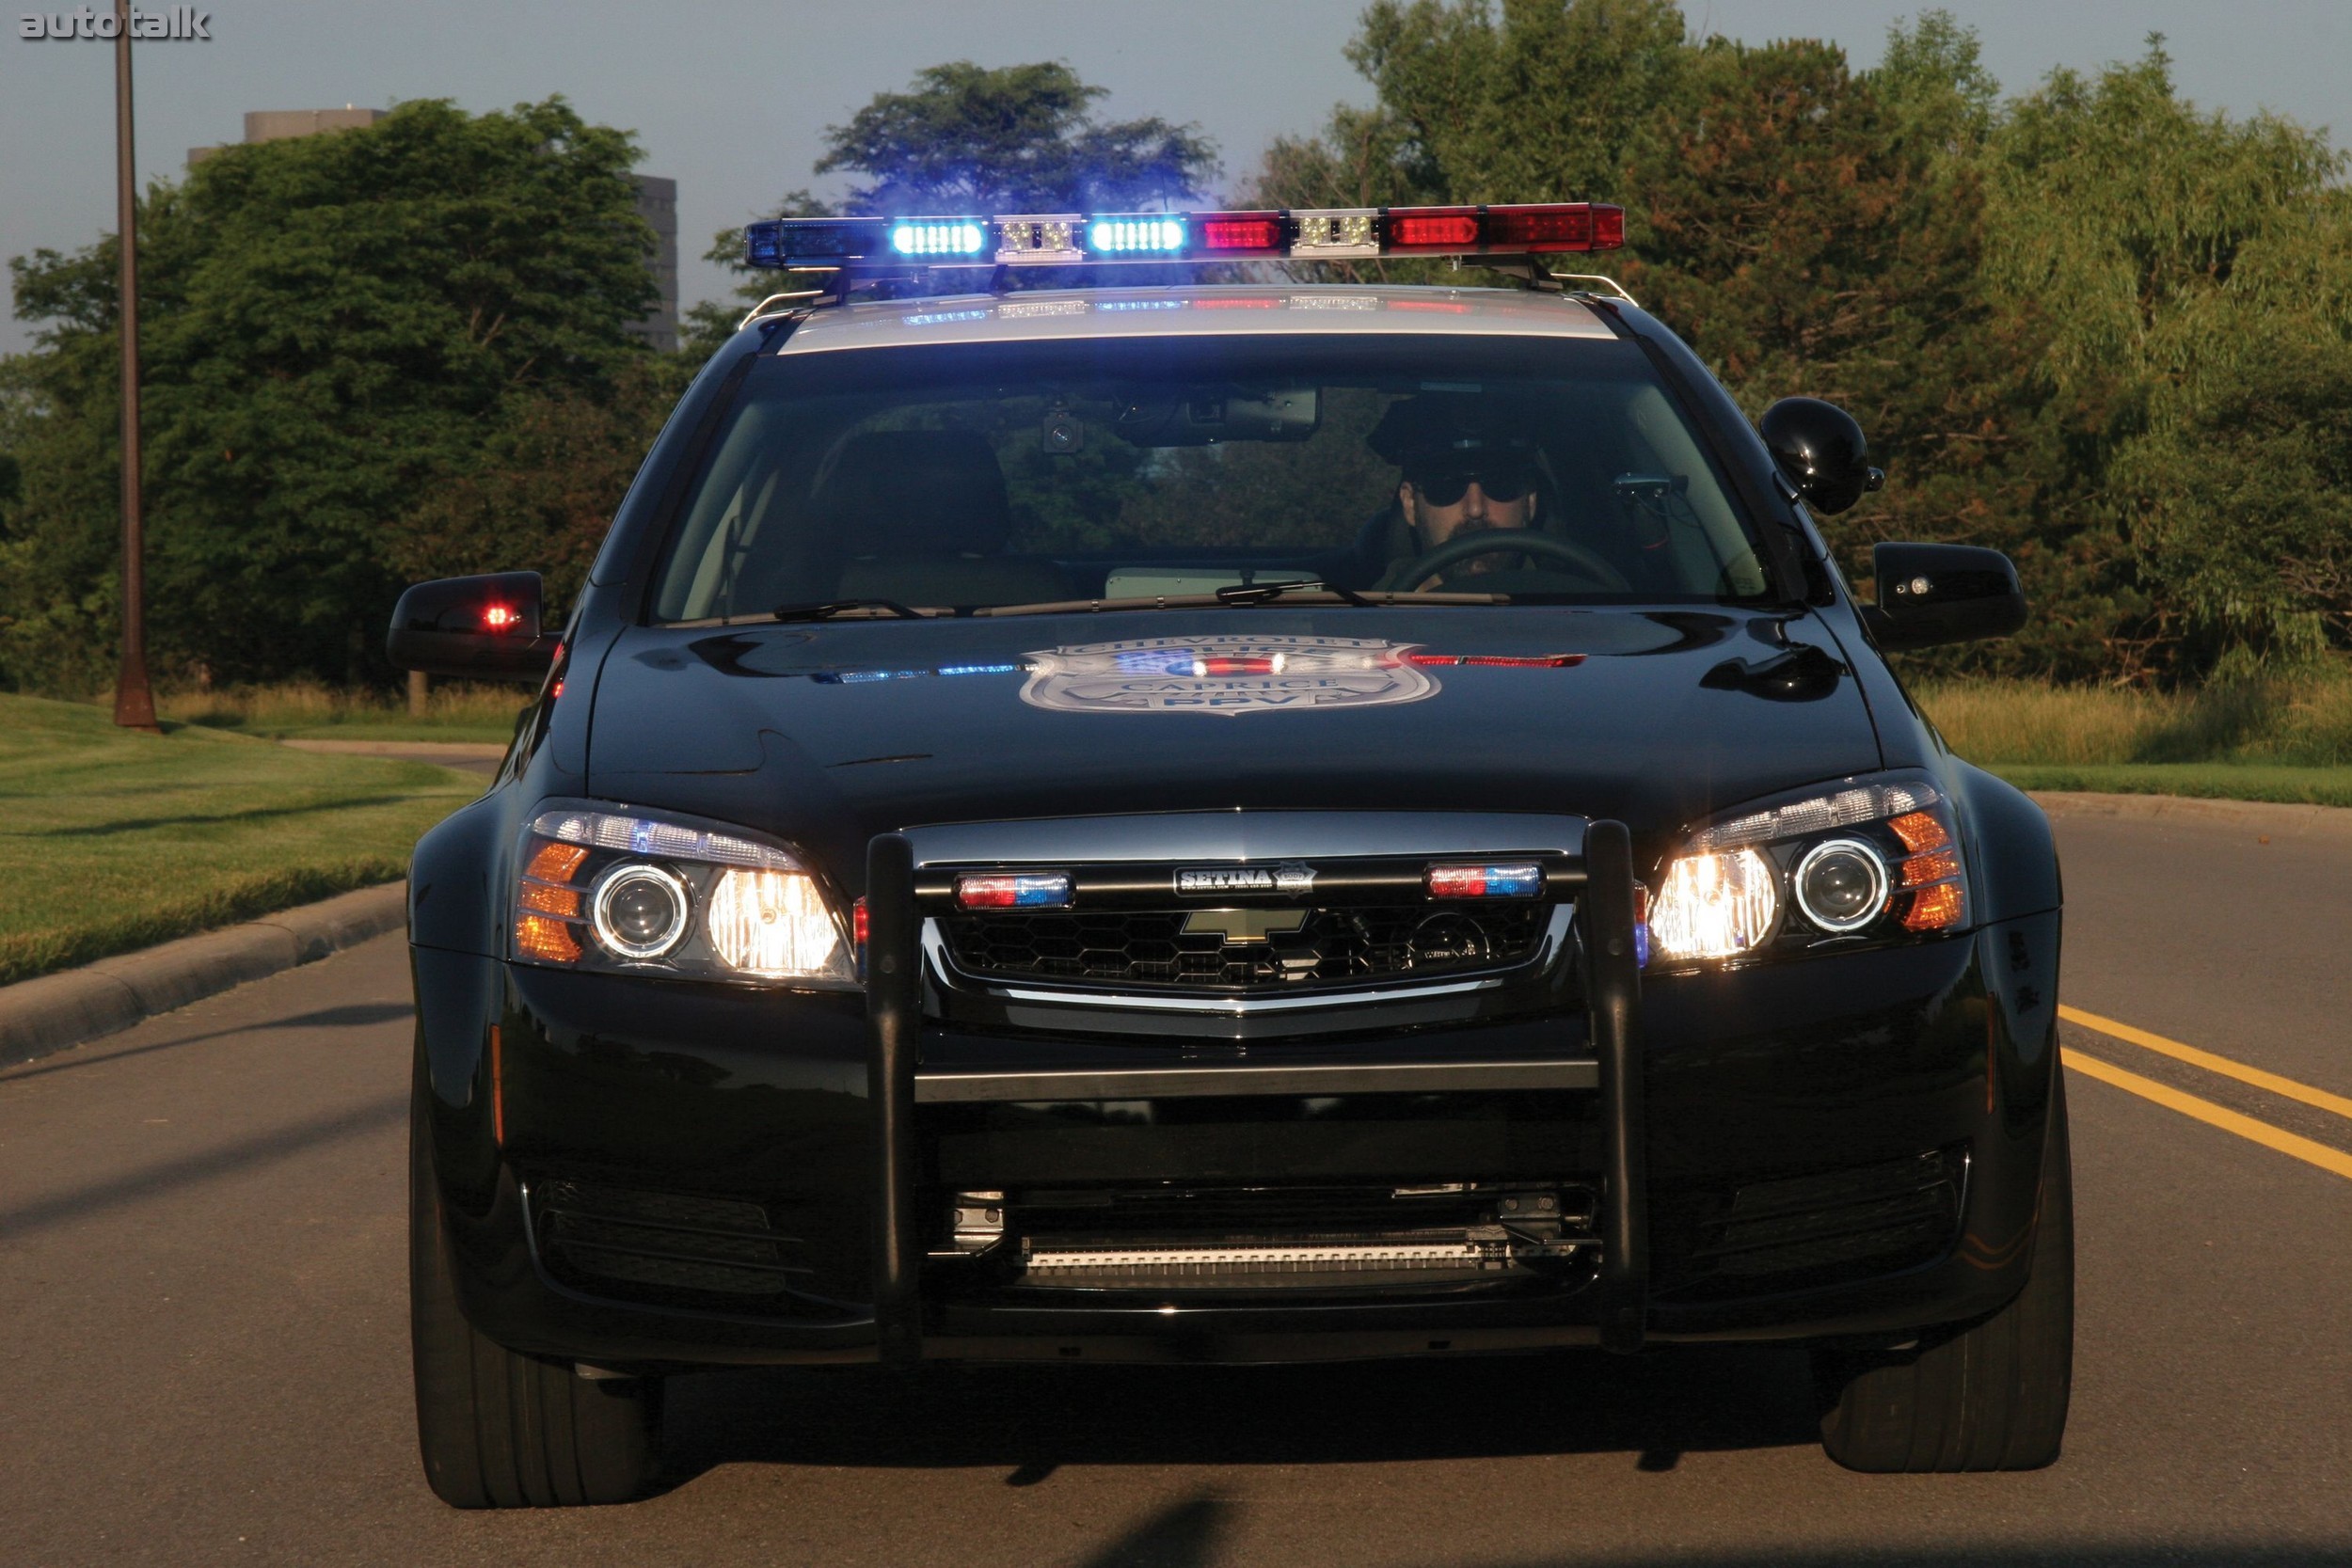 Полицейские патрули машины. Chevrolet Caprice Police Interceptor. Chevrolet Caprice Police 2010 года. Chevrolet trailblazer Police Interceptor. Chevrolet Caprice Police Patrol vehicle.